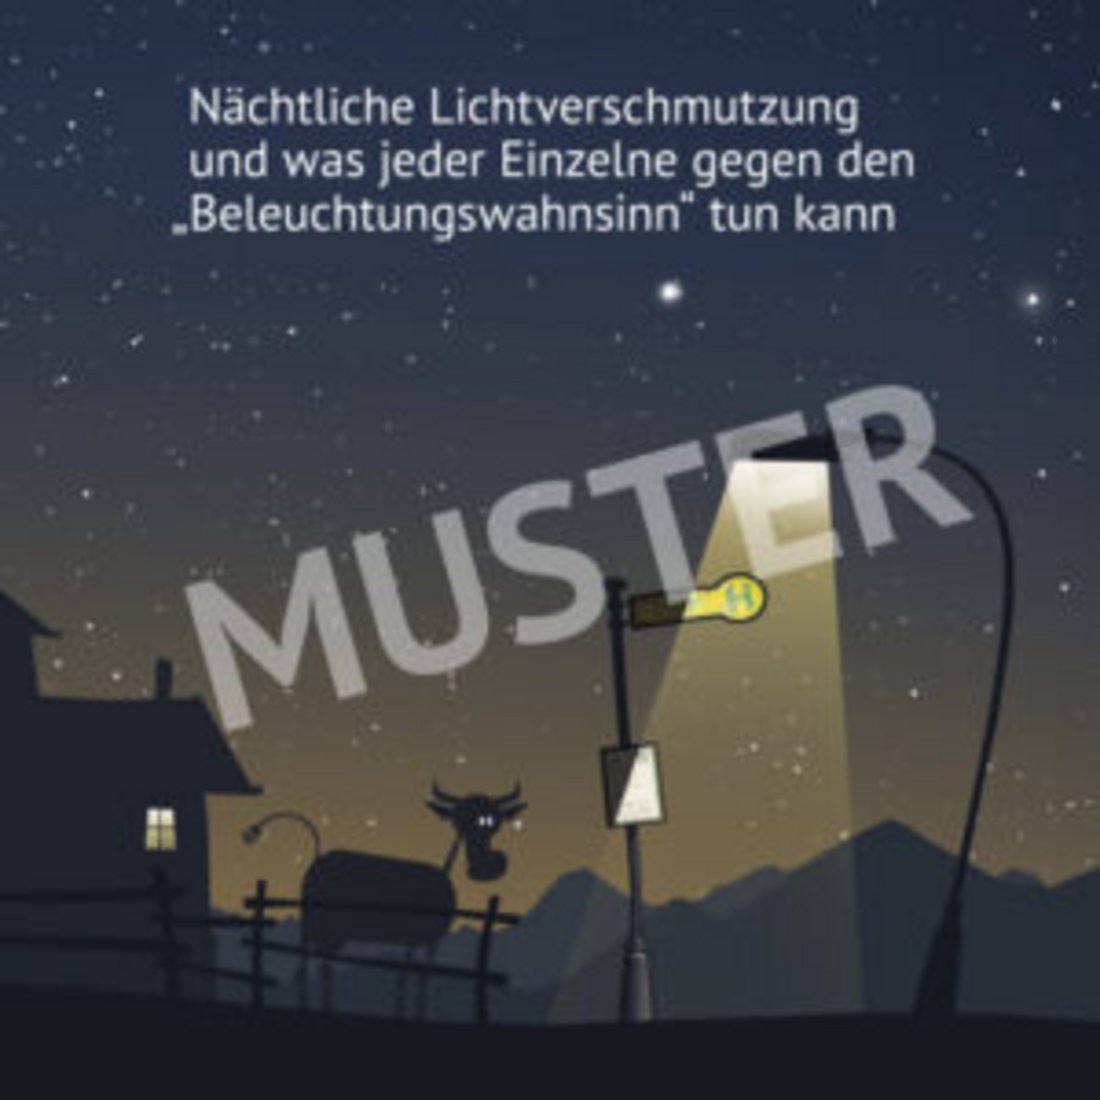 Vortrag "Lichtverschmutzung - Das Ende der Nacht?" mit Manuel Philipp